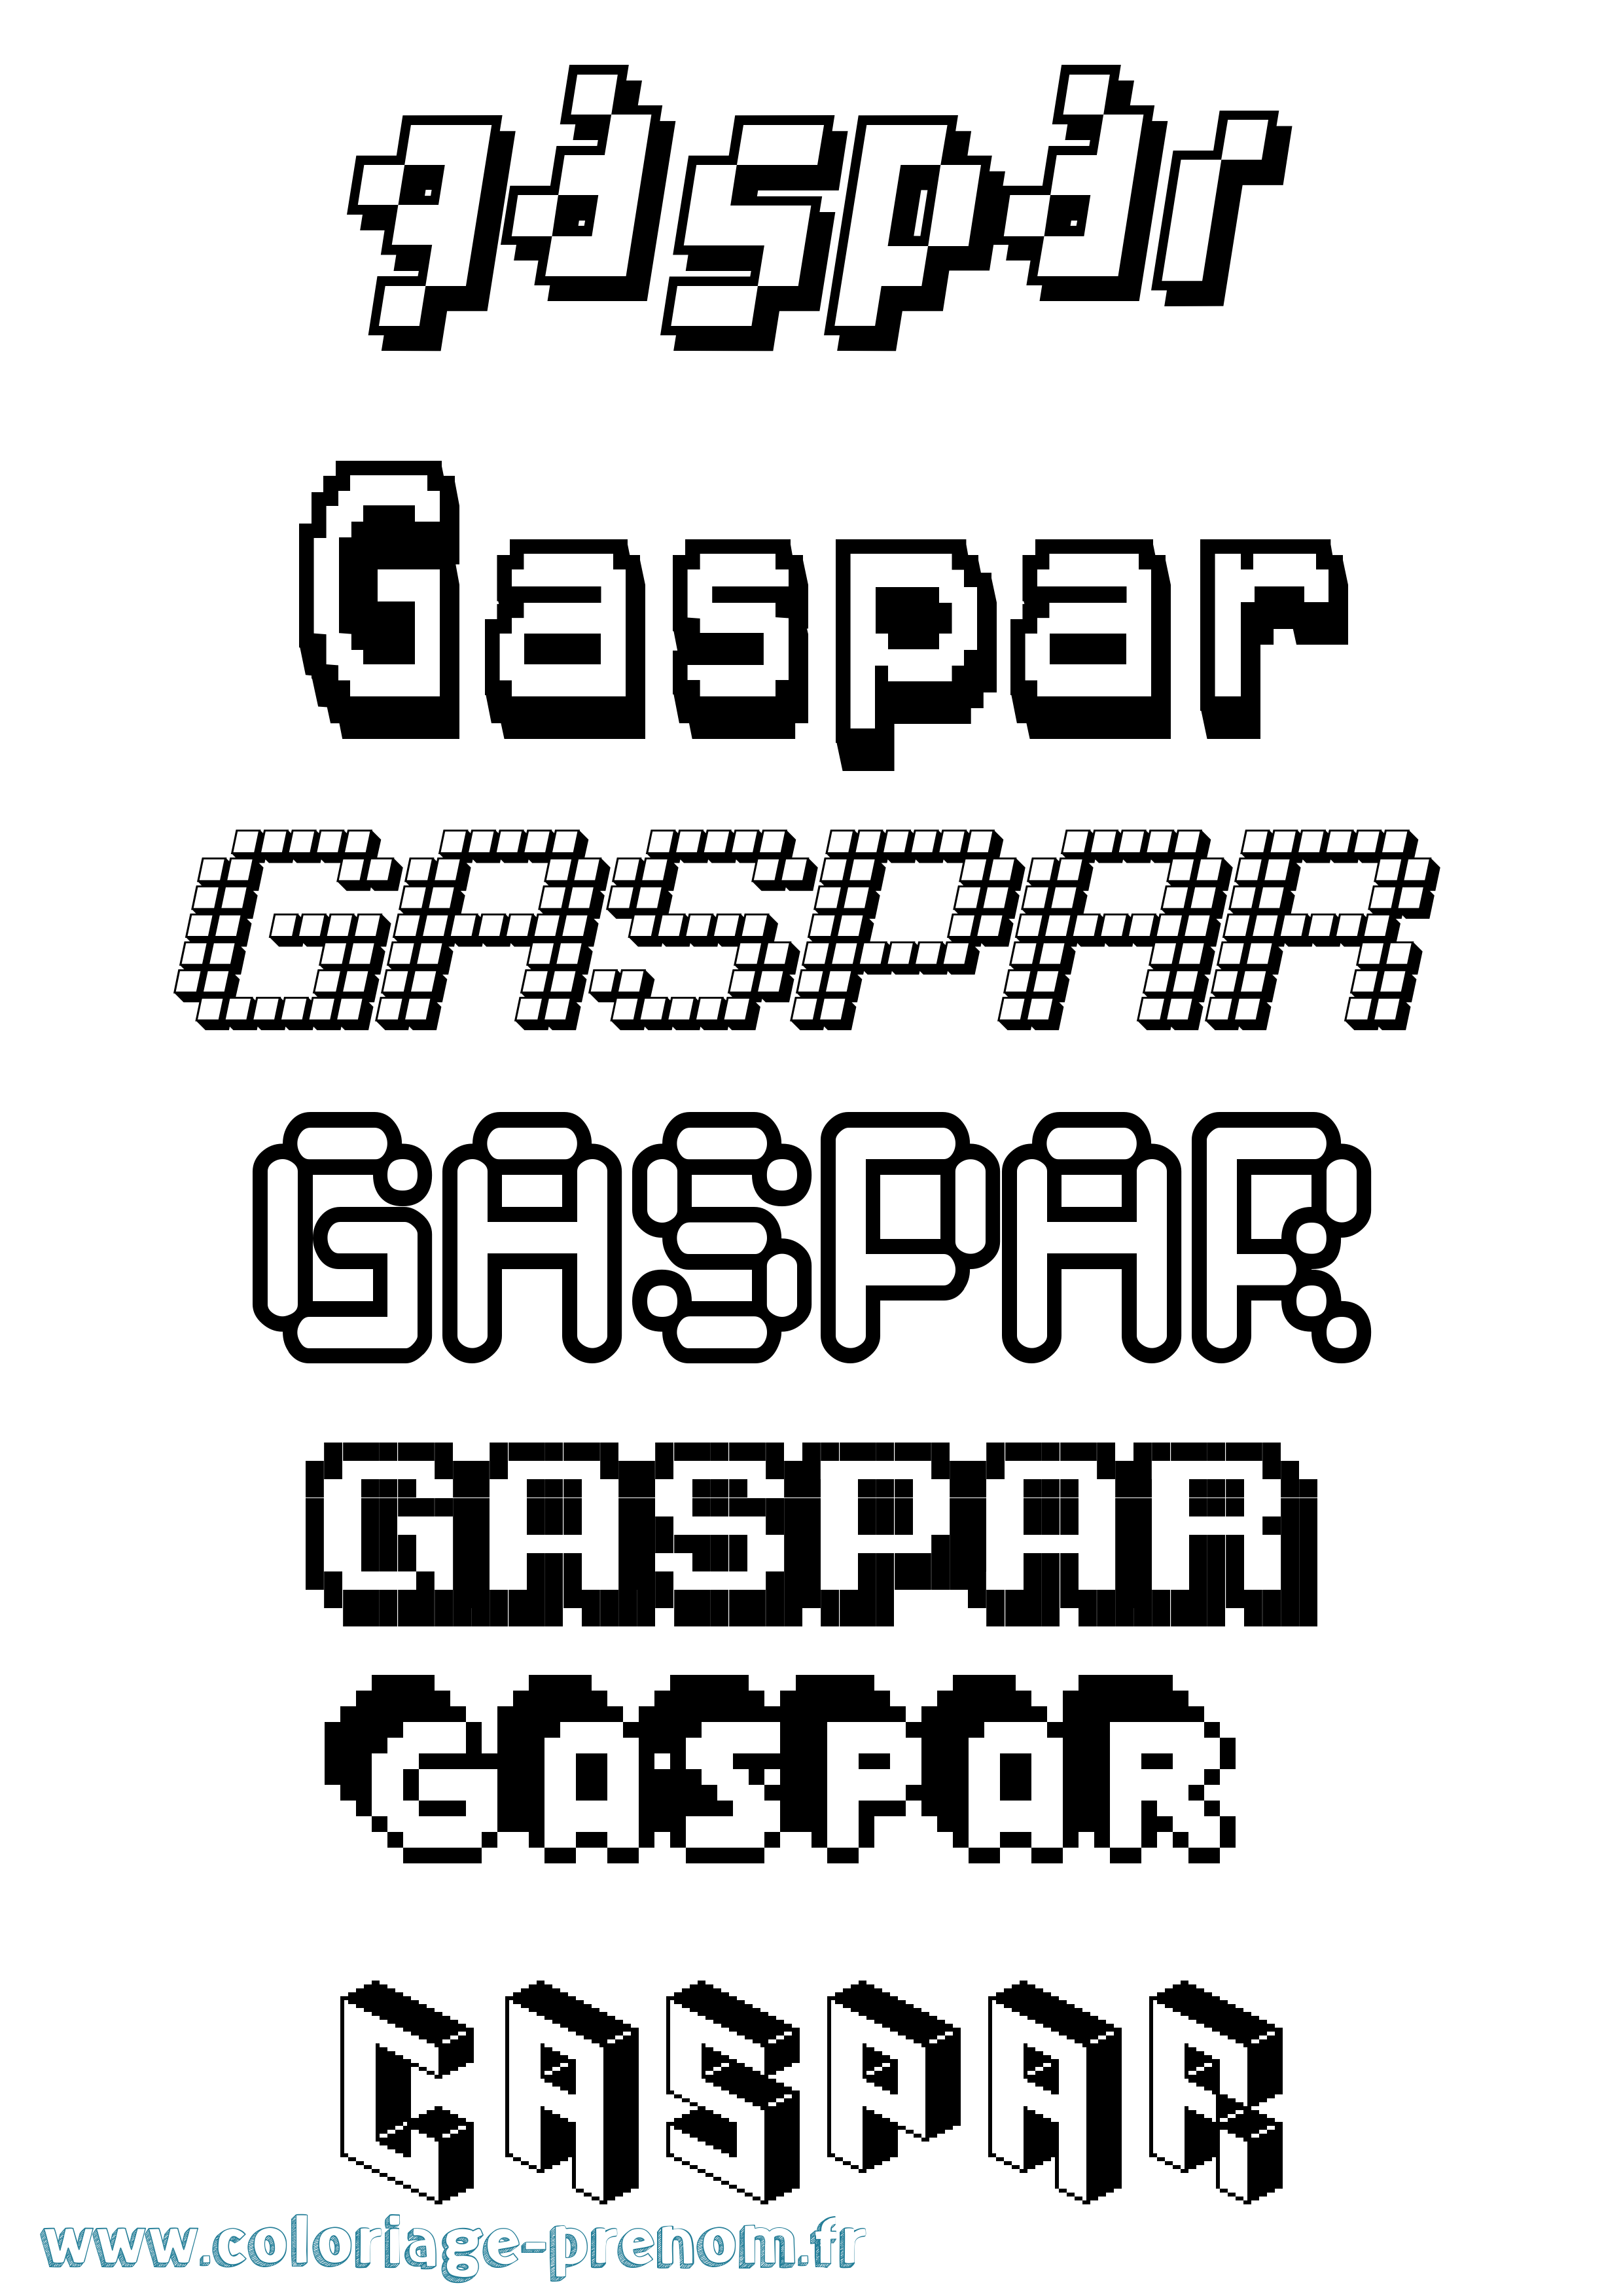 Coloriage prénom Gaspar Pixel